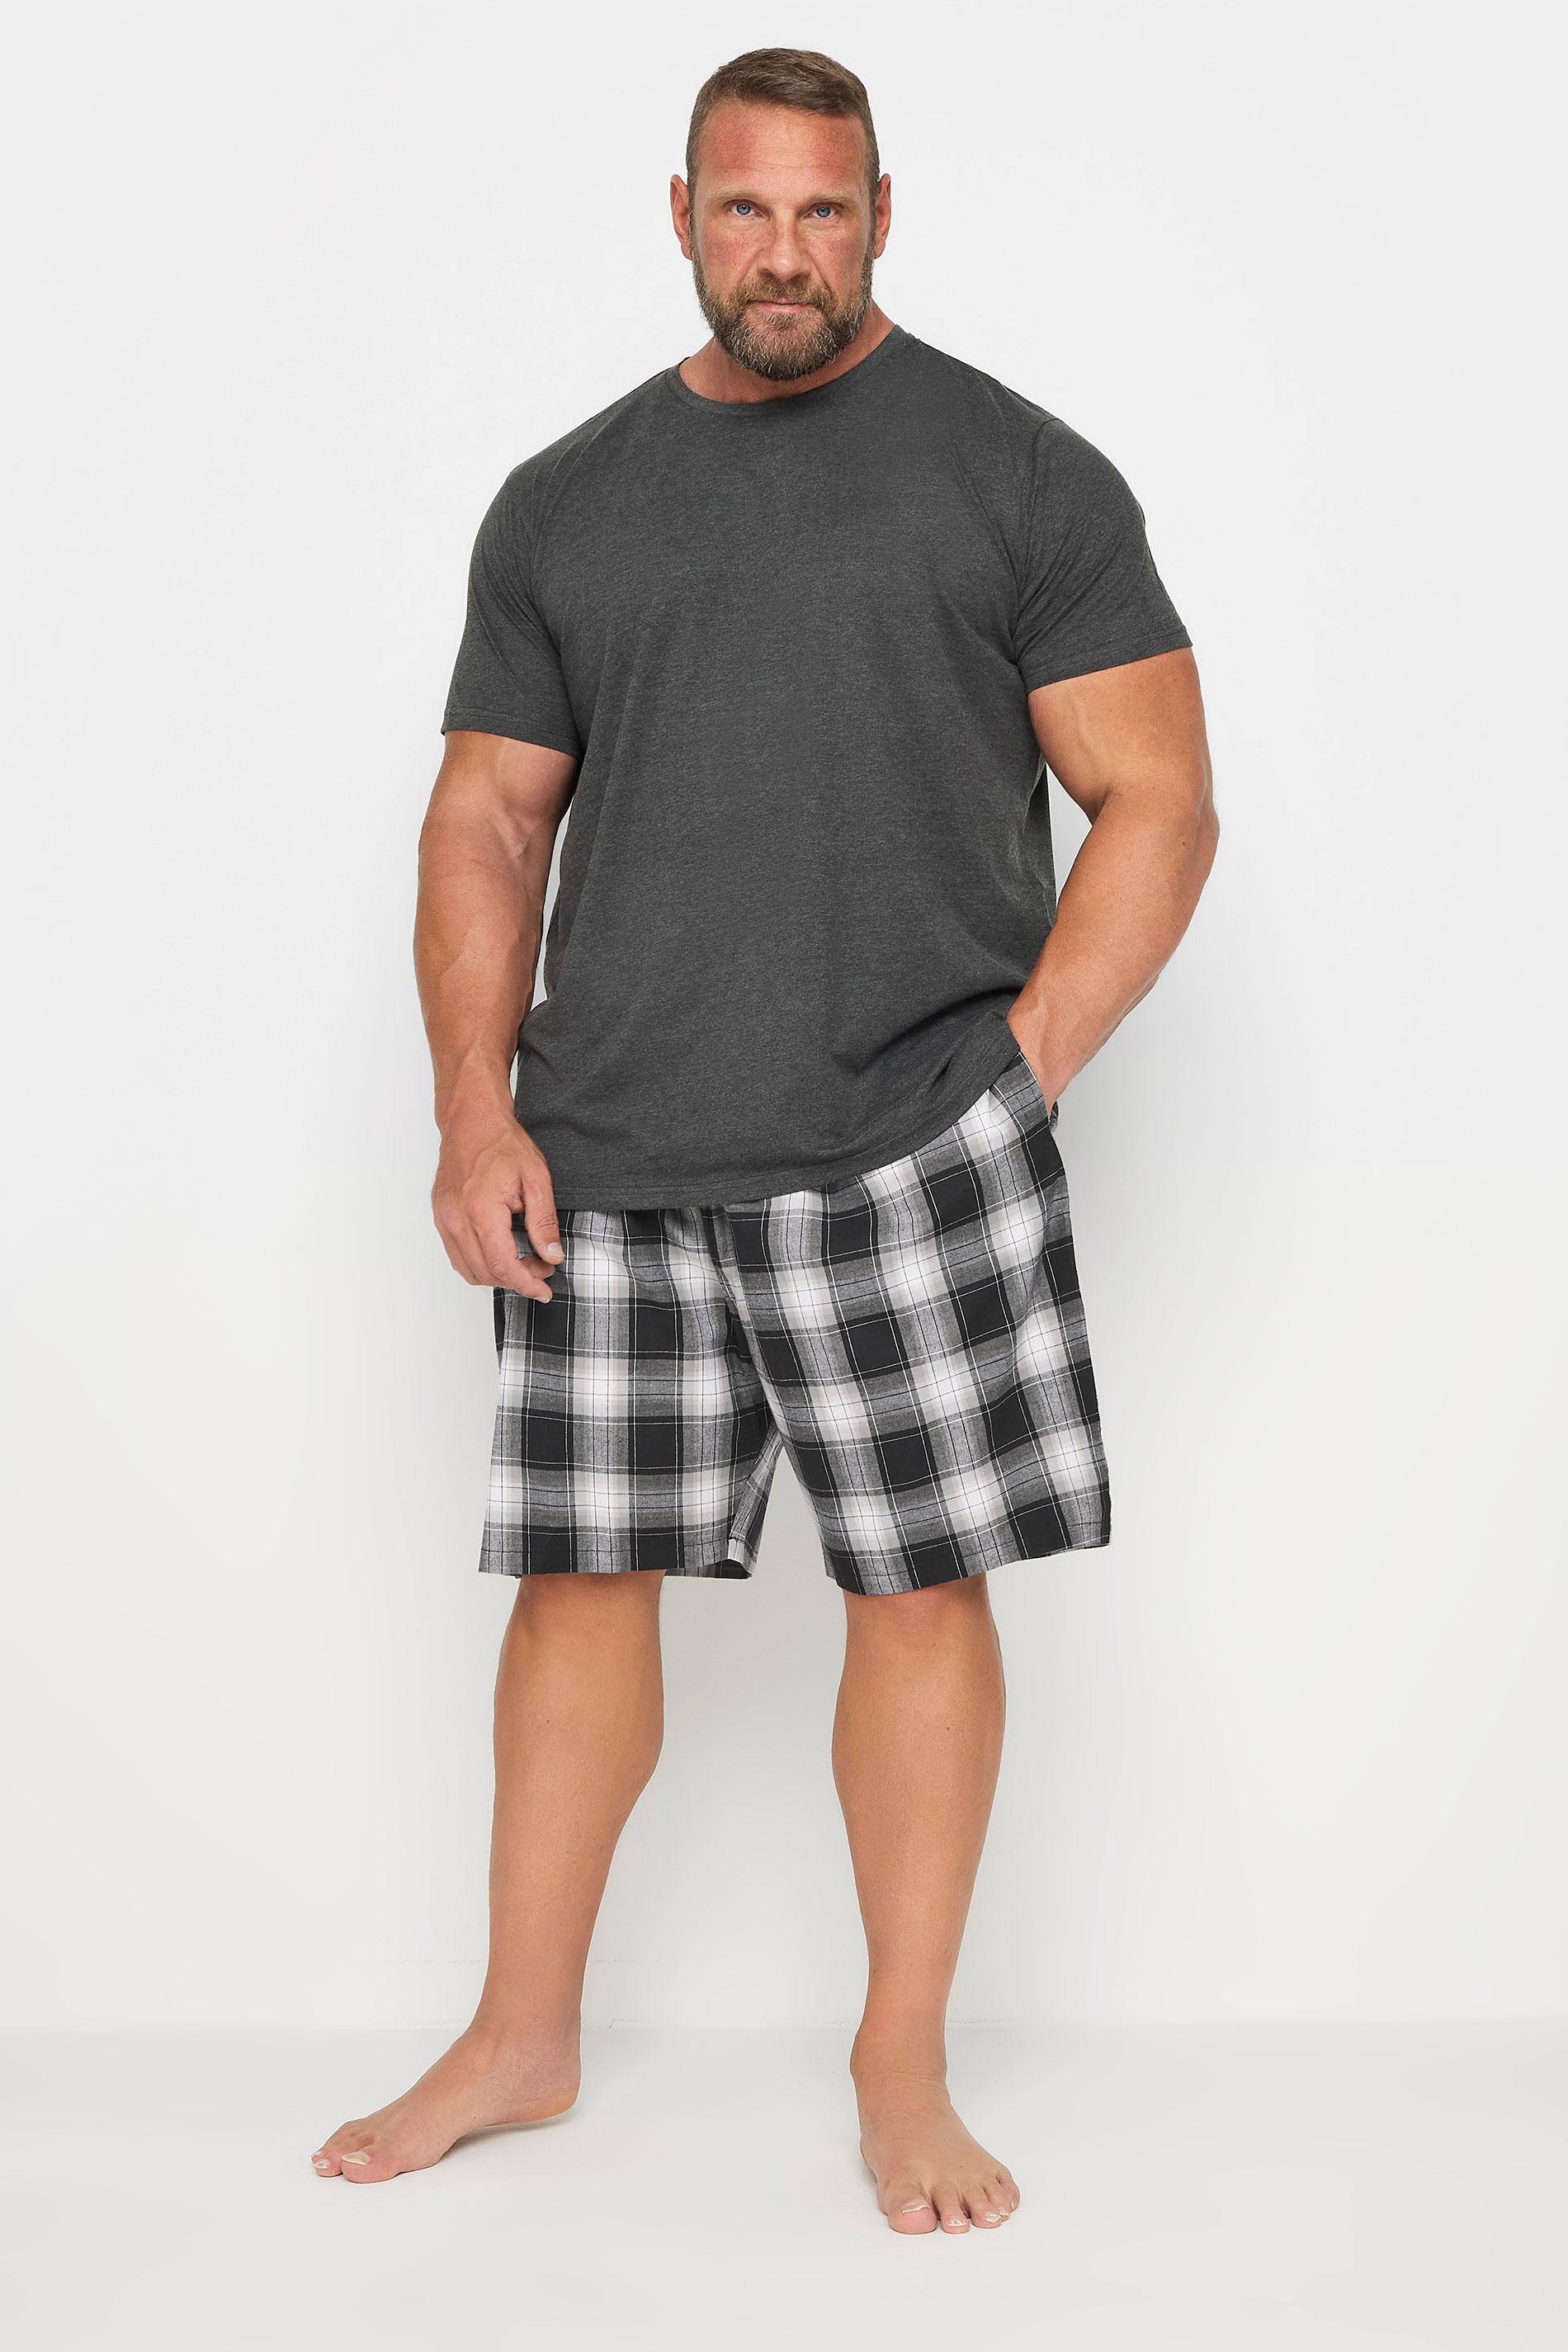 BadRhino Big & Tall Black Checked Shorts and T-Shirt Pyjama Set | BadRhino 1